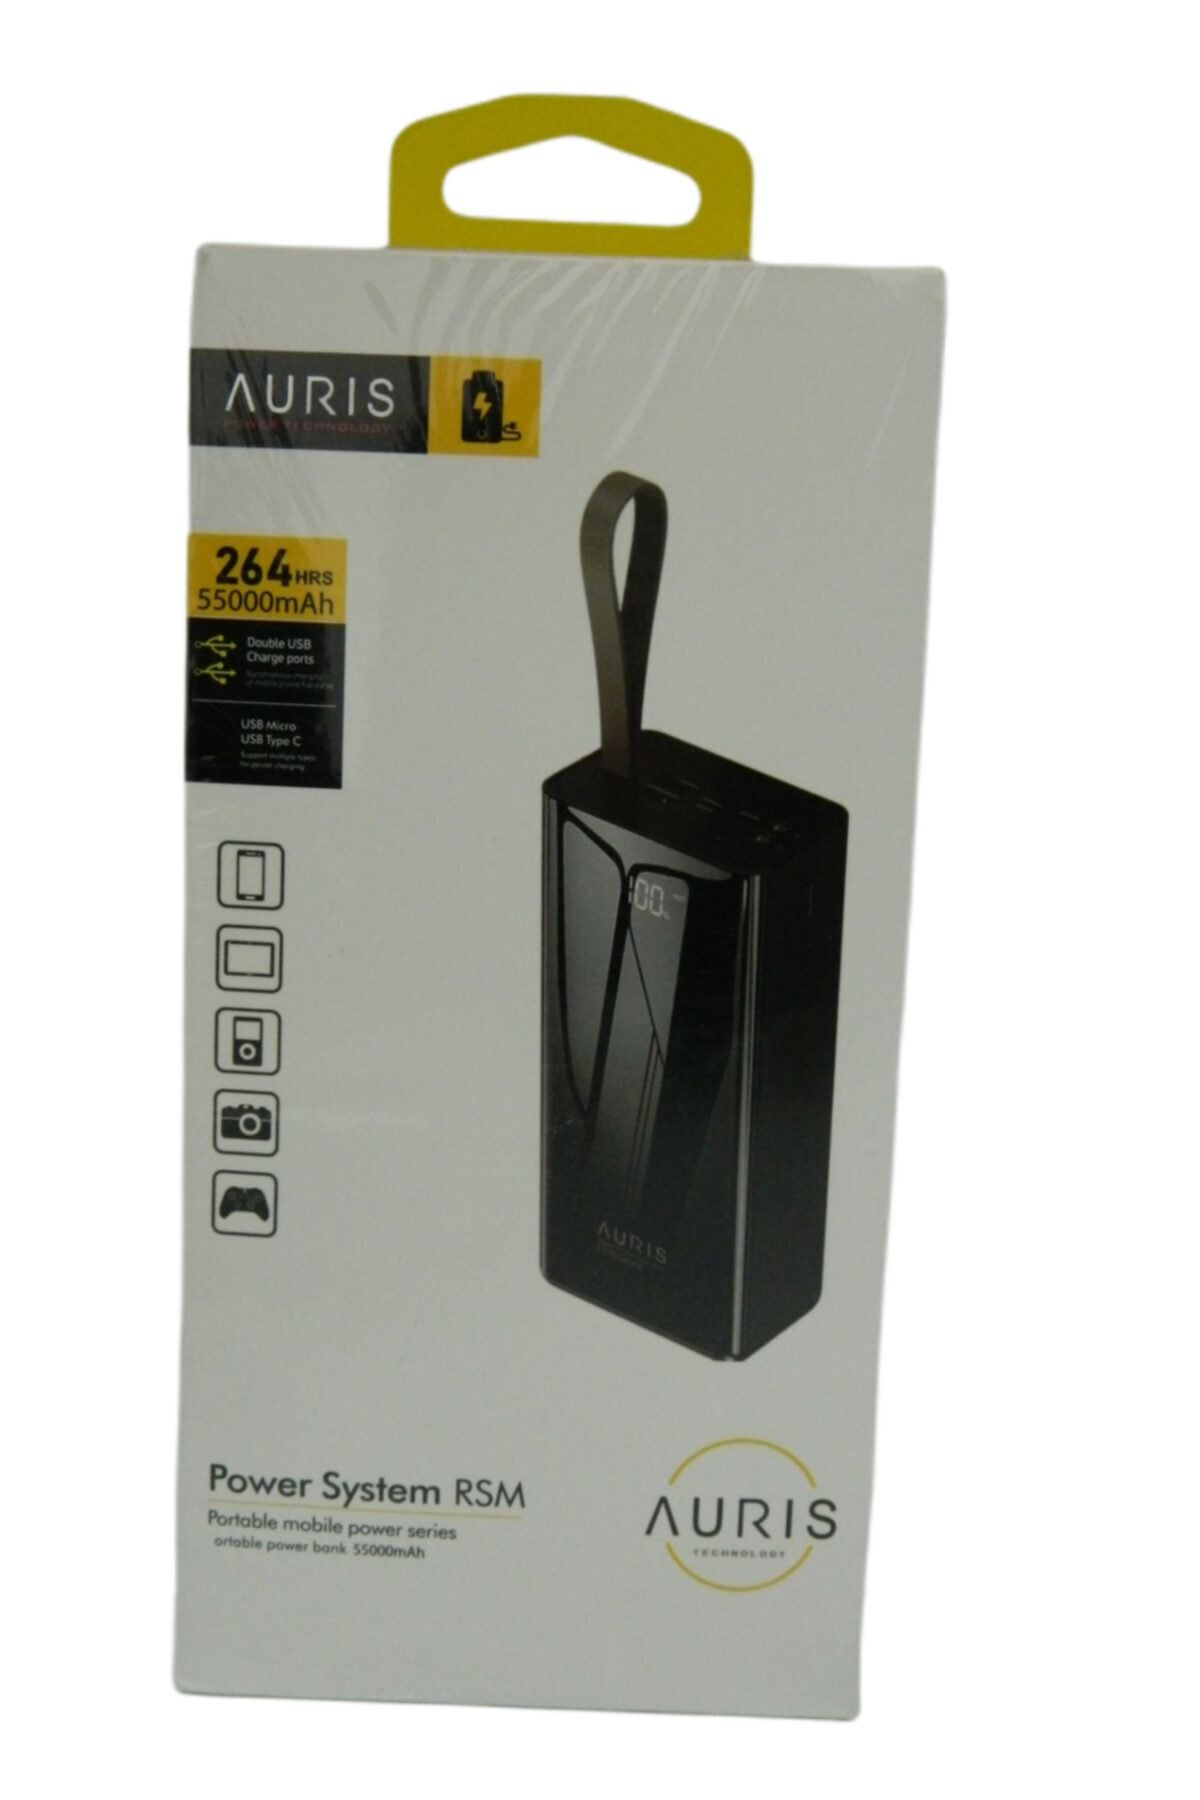 Auris Ab-1407 55000 Mah Powerbank